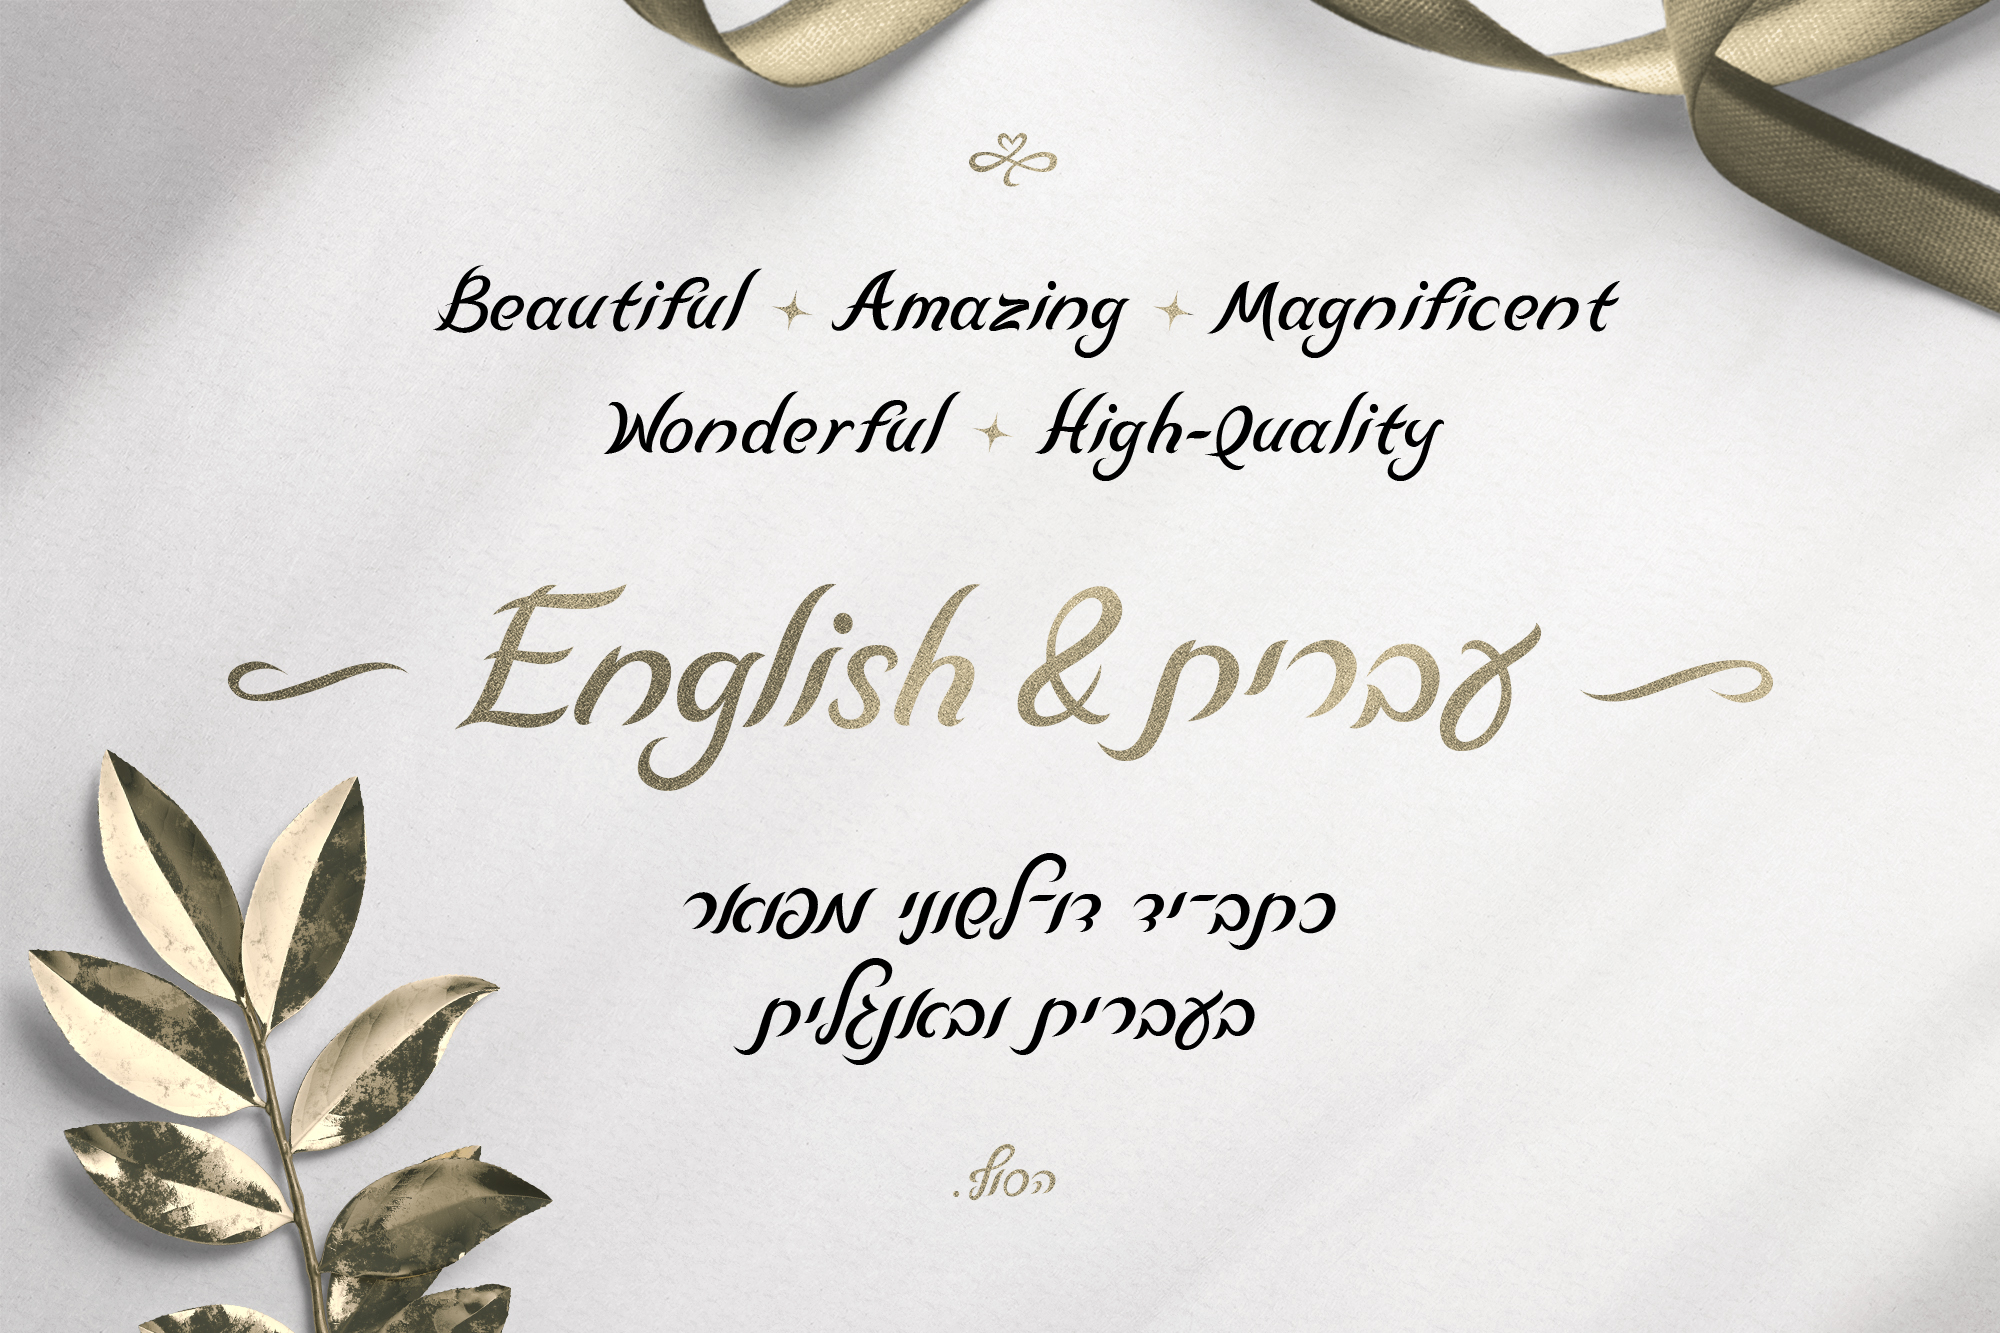 כתב־יד דו לשוני מפואר בעברית ובאנגלית - High Quality Magnificent Wonderful Amazing Beautiful - פונט לואיז